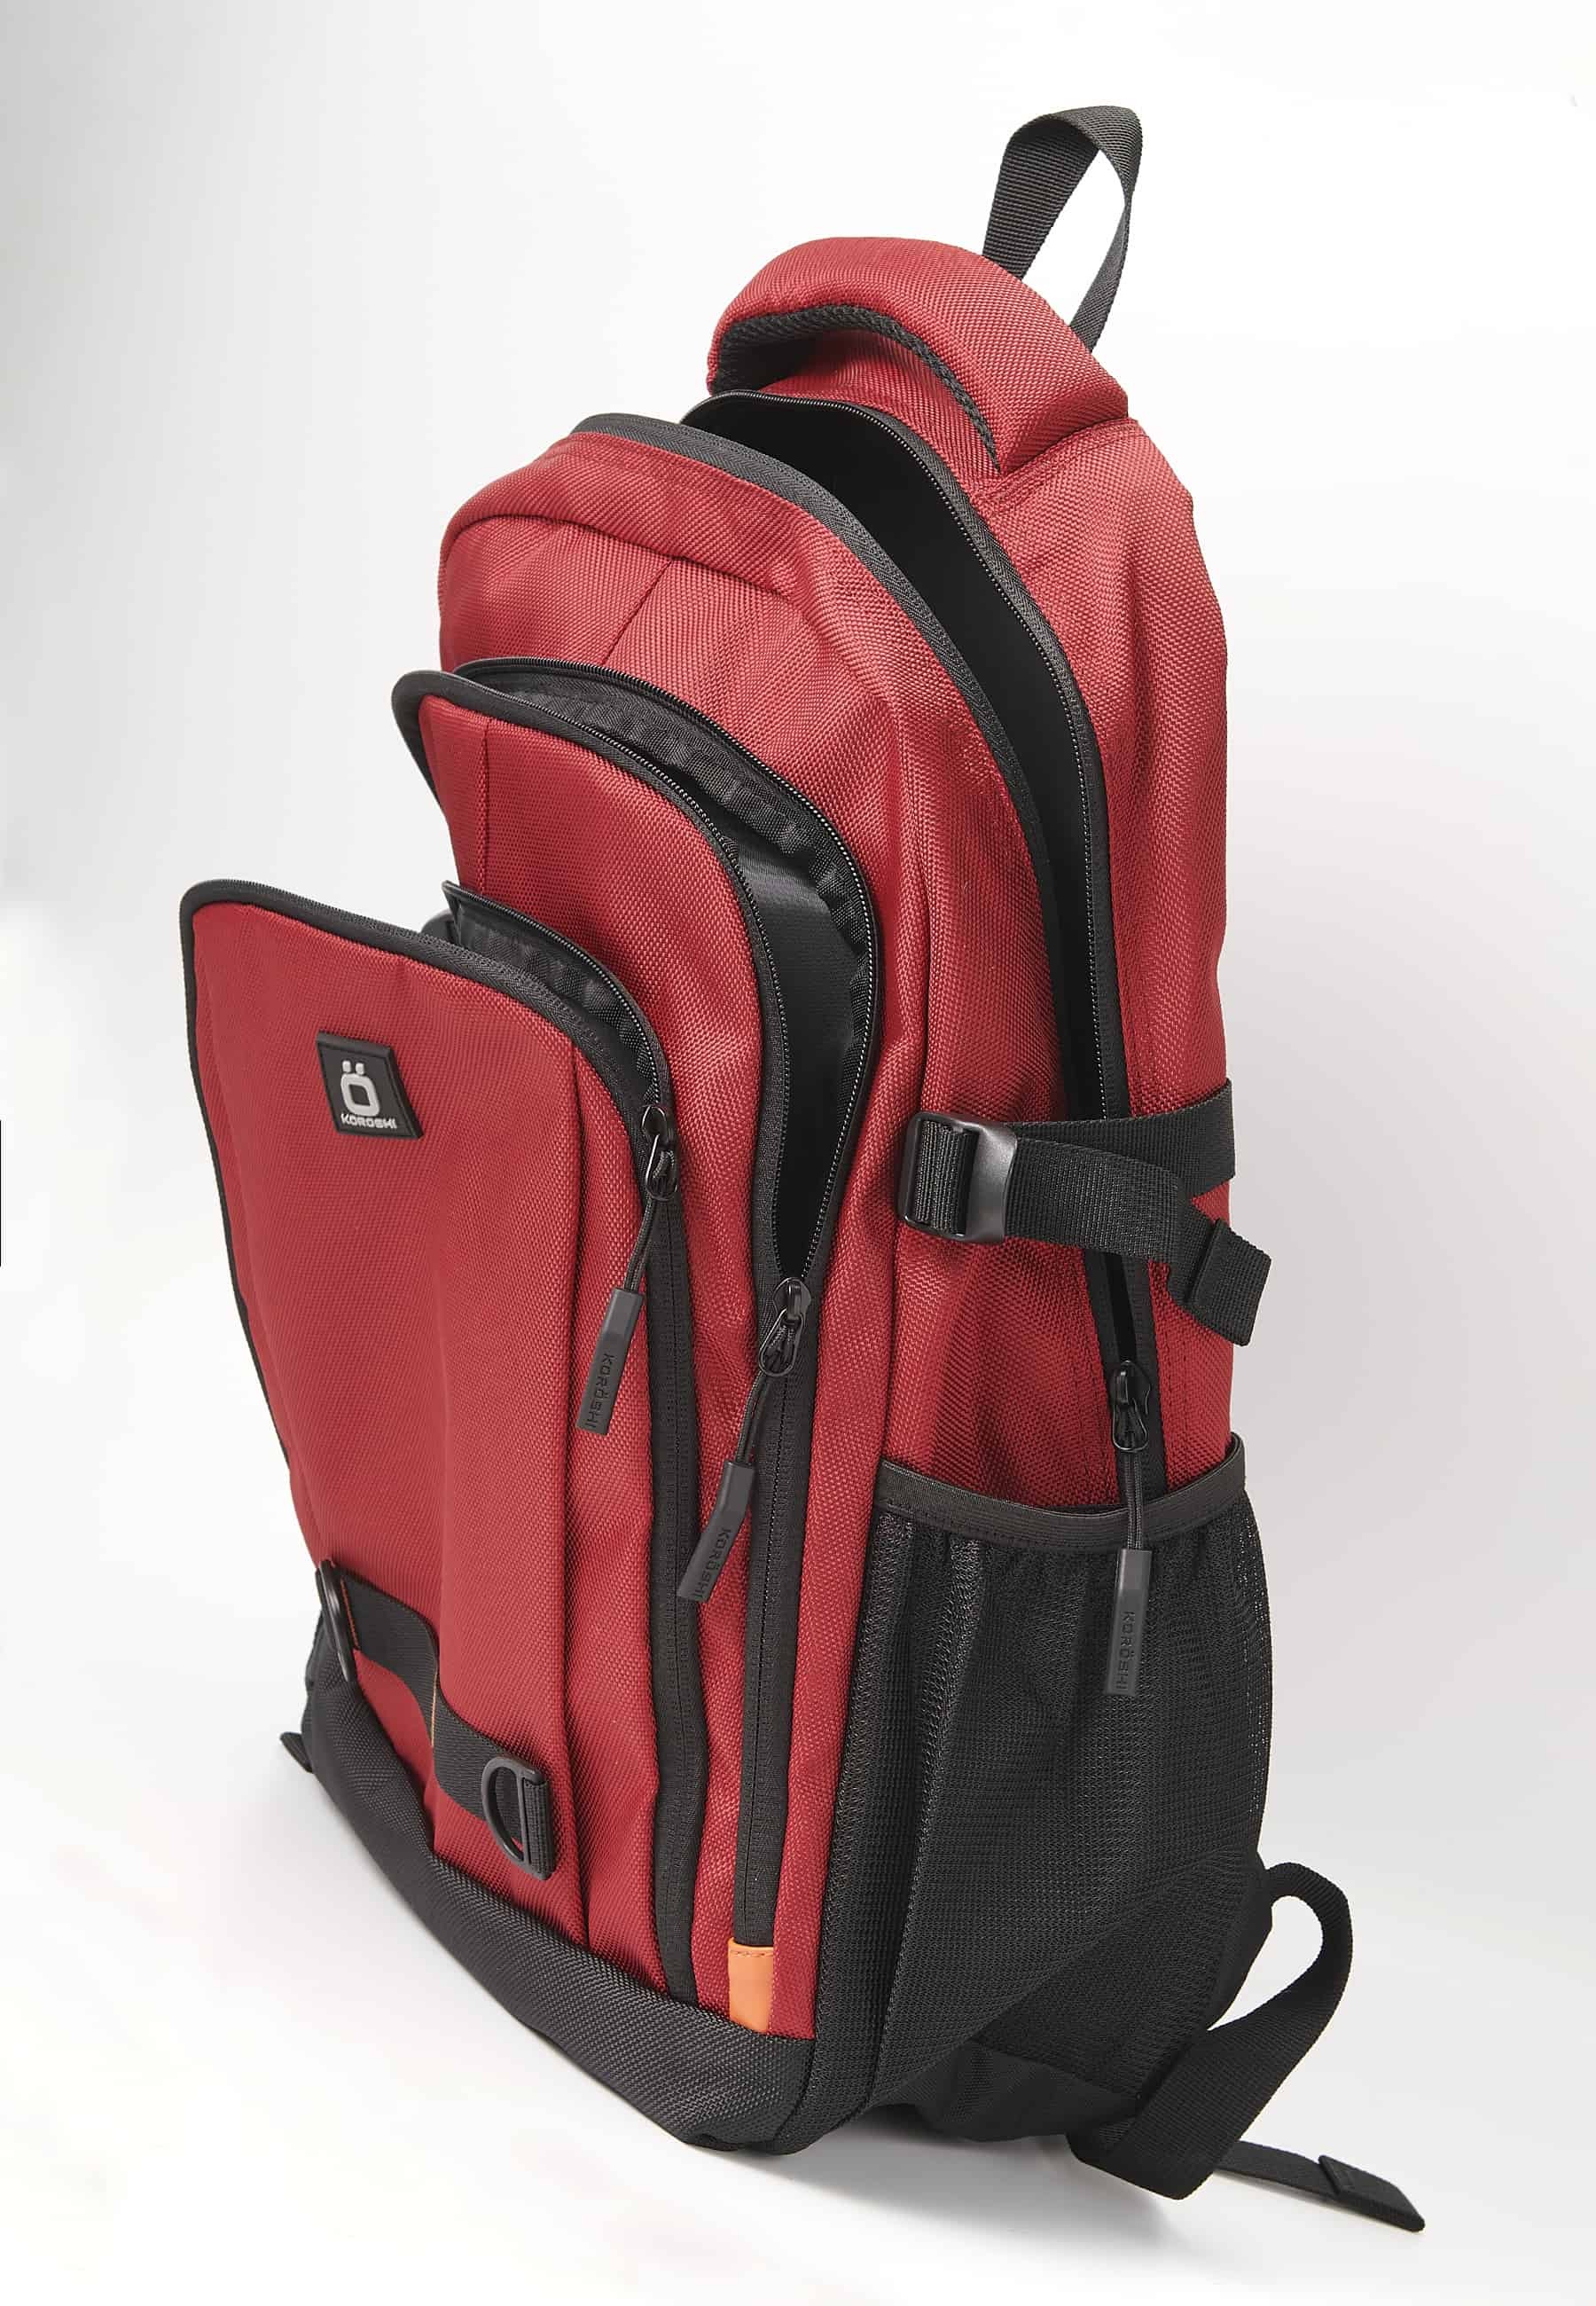 Koröshi-Rucksack mit drei Reißverschlussfächern, eines für Laptop, mit roten Innentaschen